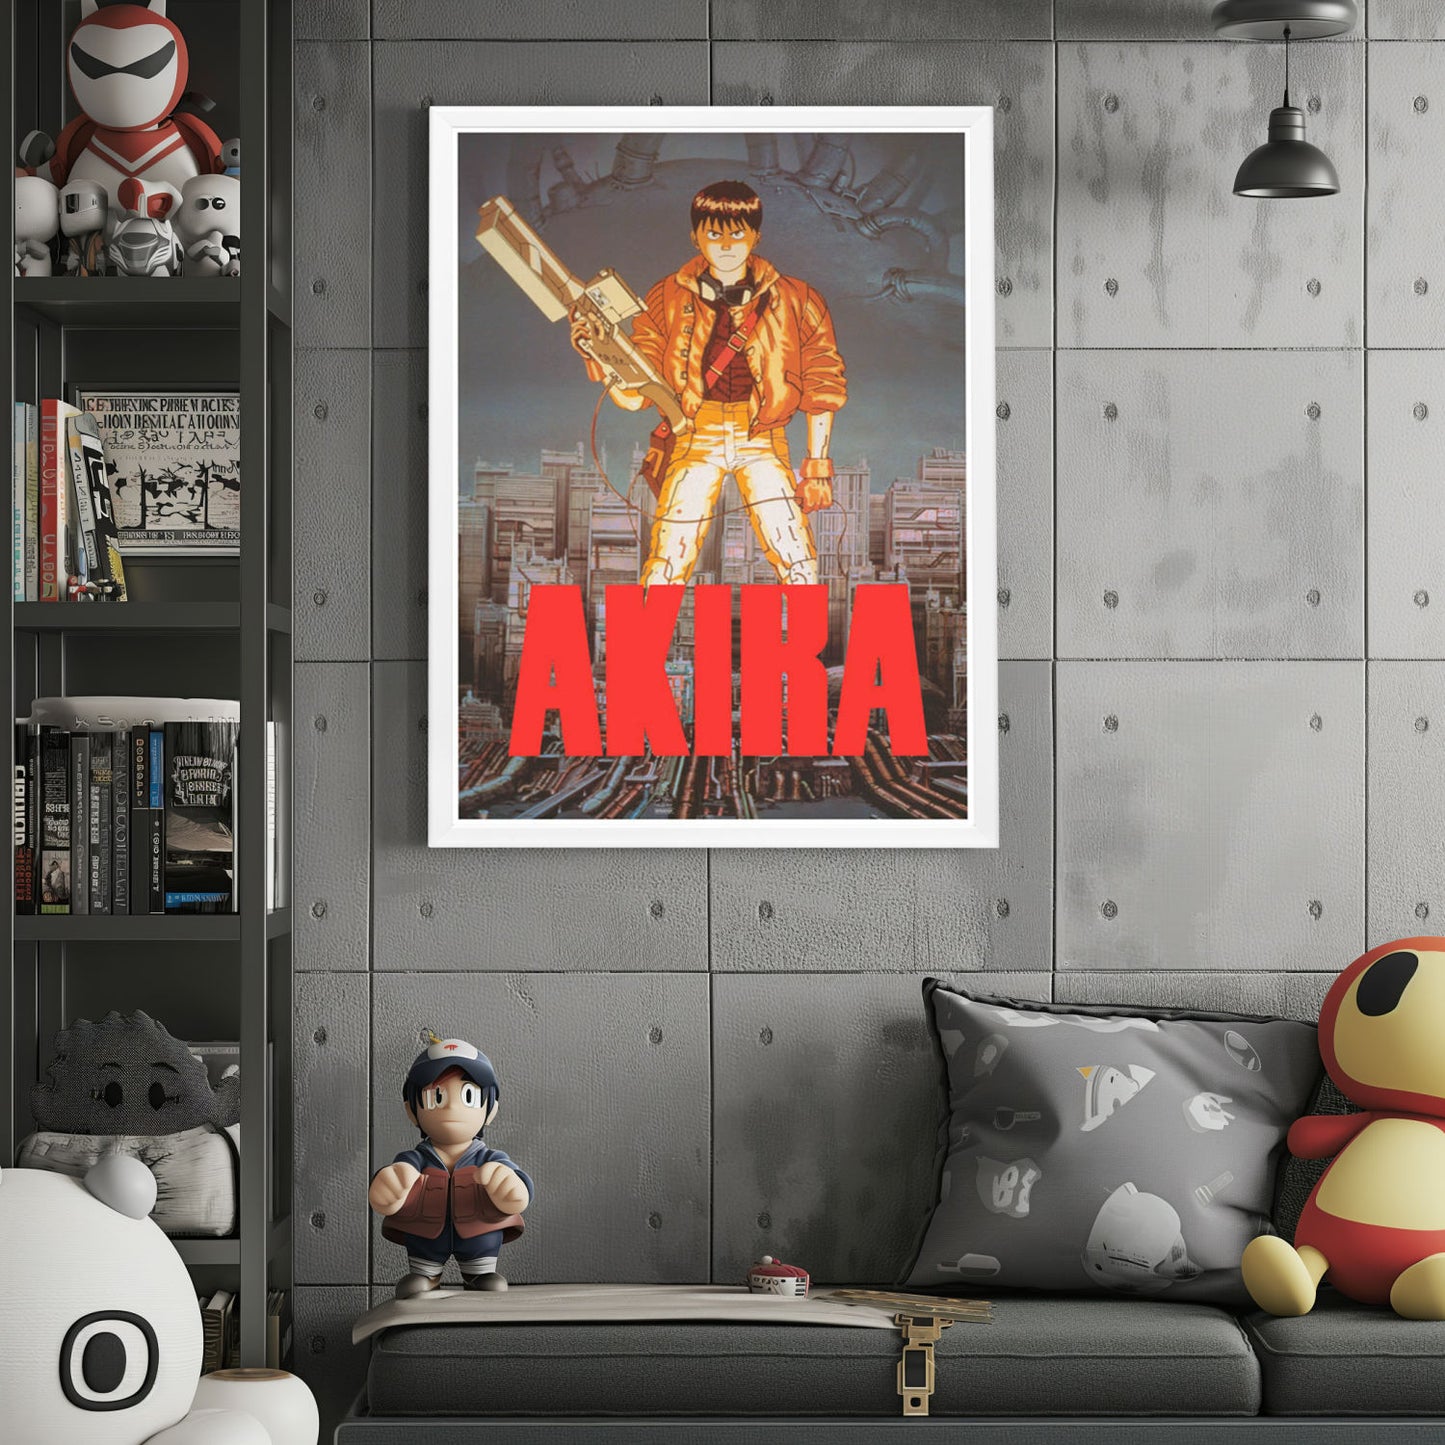 "Akira" (1988) Framed Movie Poster